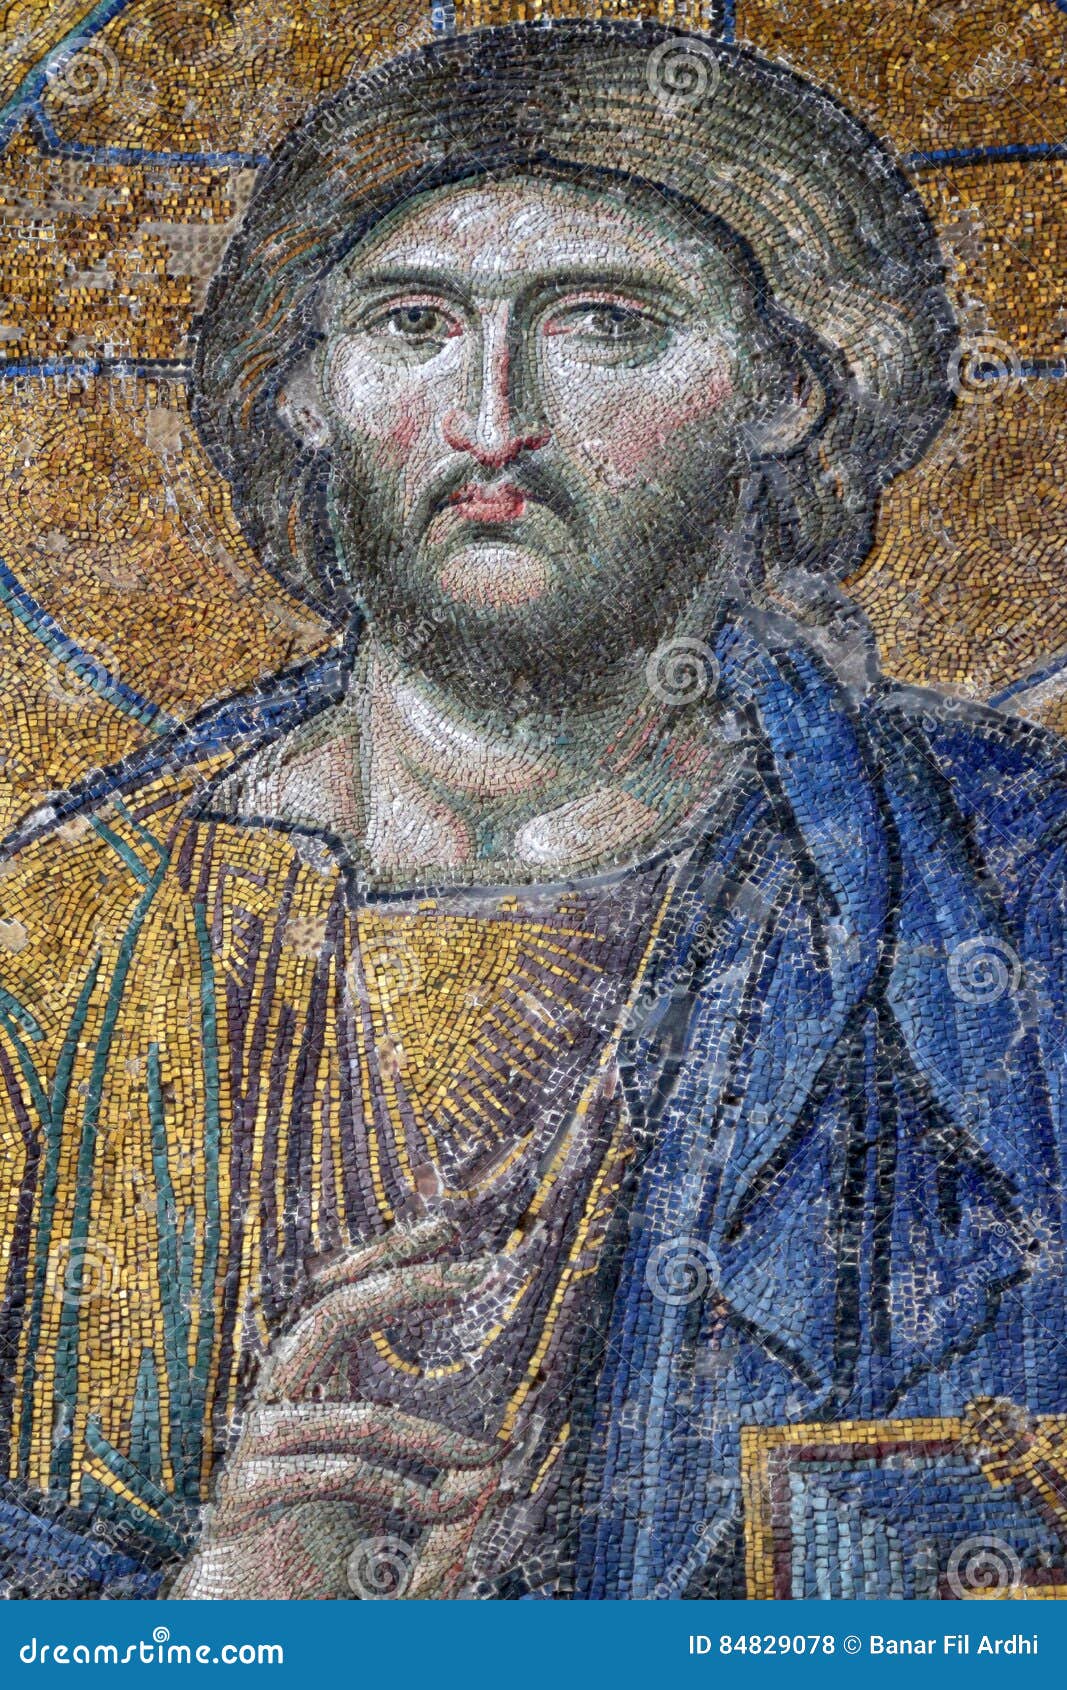 El Jesús real y el Jesús ficticio: su fisonomía - Página 5 Mosaico-bizantino-de-jesus-christ-en-hagia-sophia-84829078